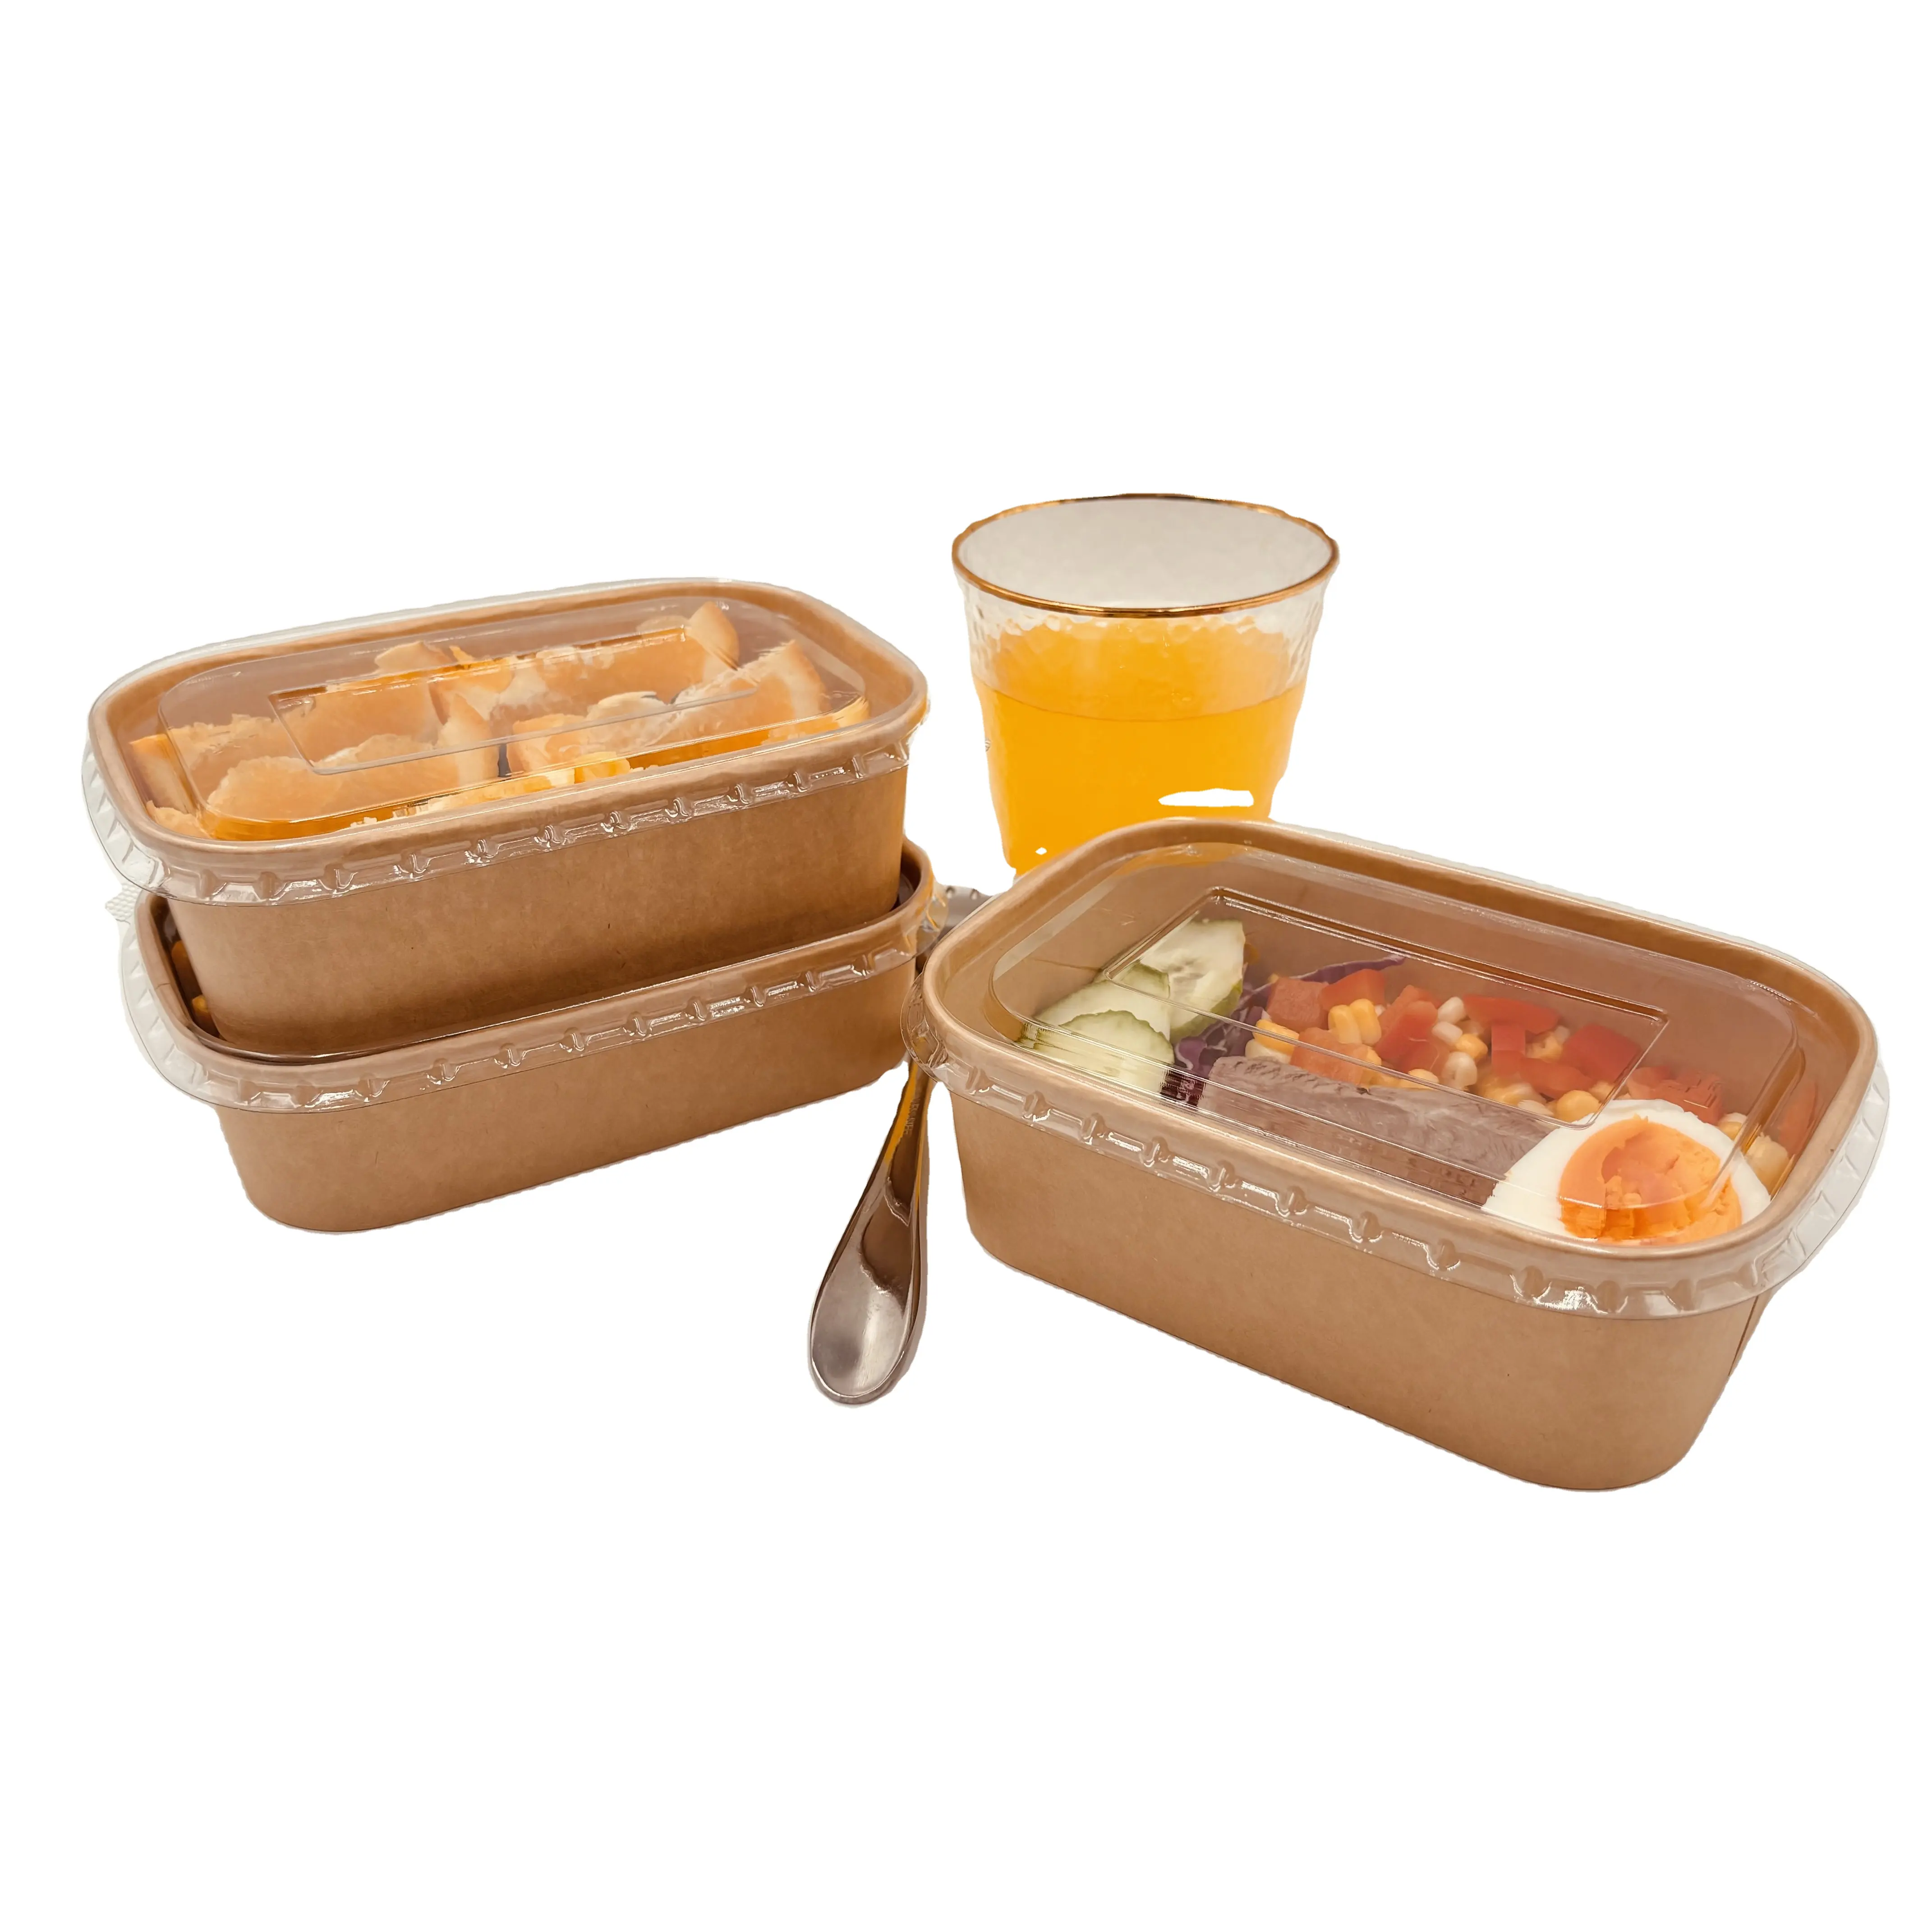 Contenedor de papel Kraft ecológico para comida, postre desechable y horneado, embalaje de alimentos reciclable, caja para llevar